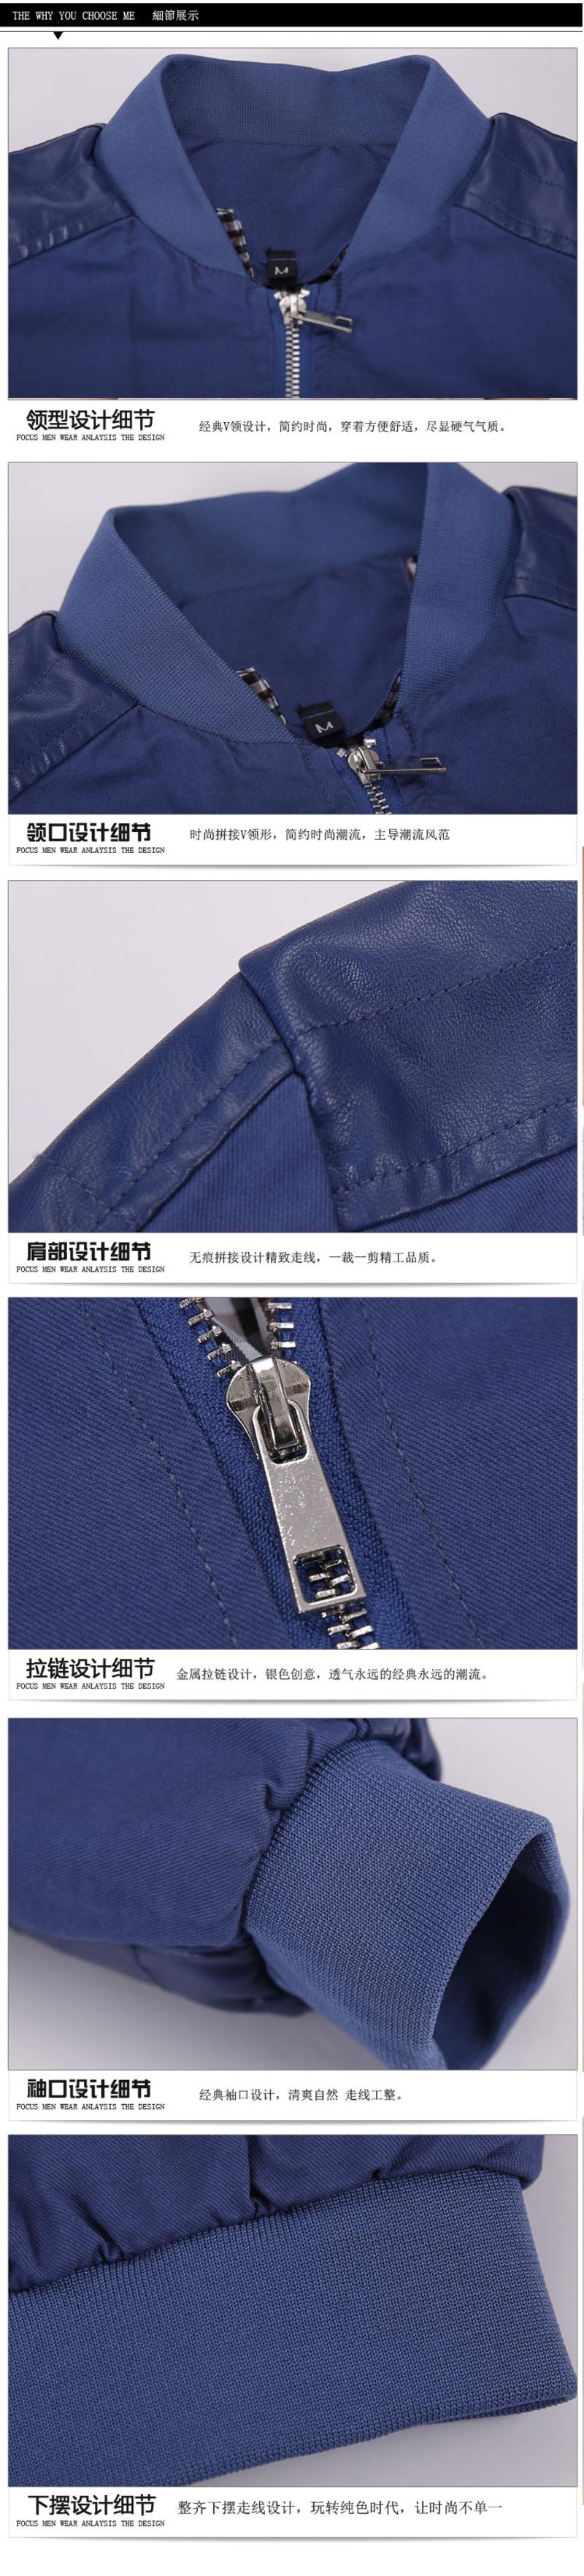 朗欣水洗夹克时尚干练男青年韩版潮流拉链修身夹克外套潮S-J3211